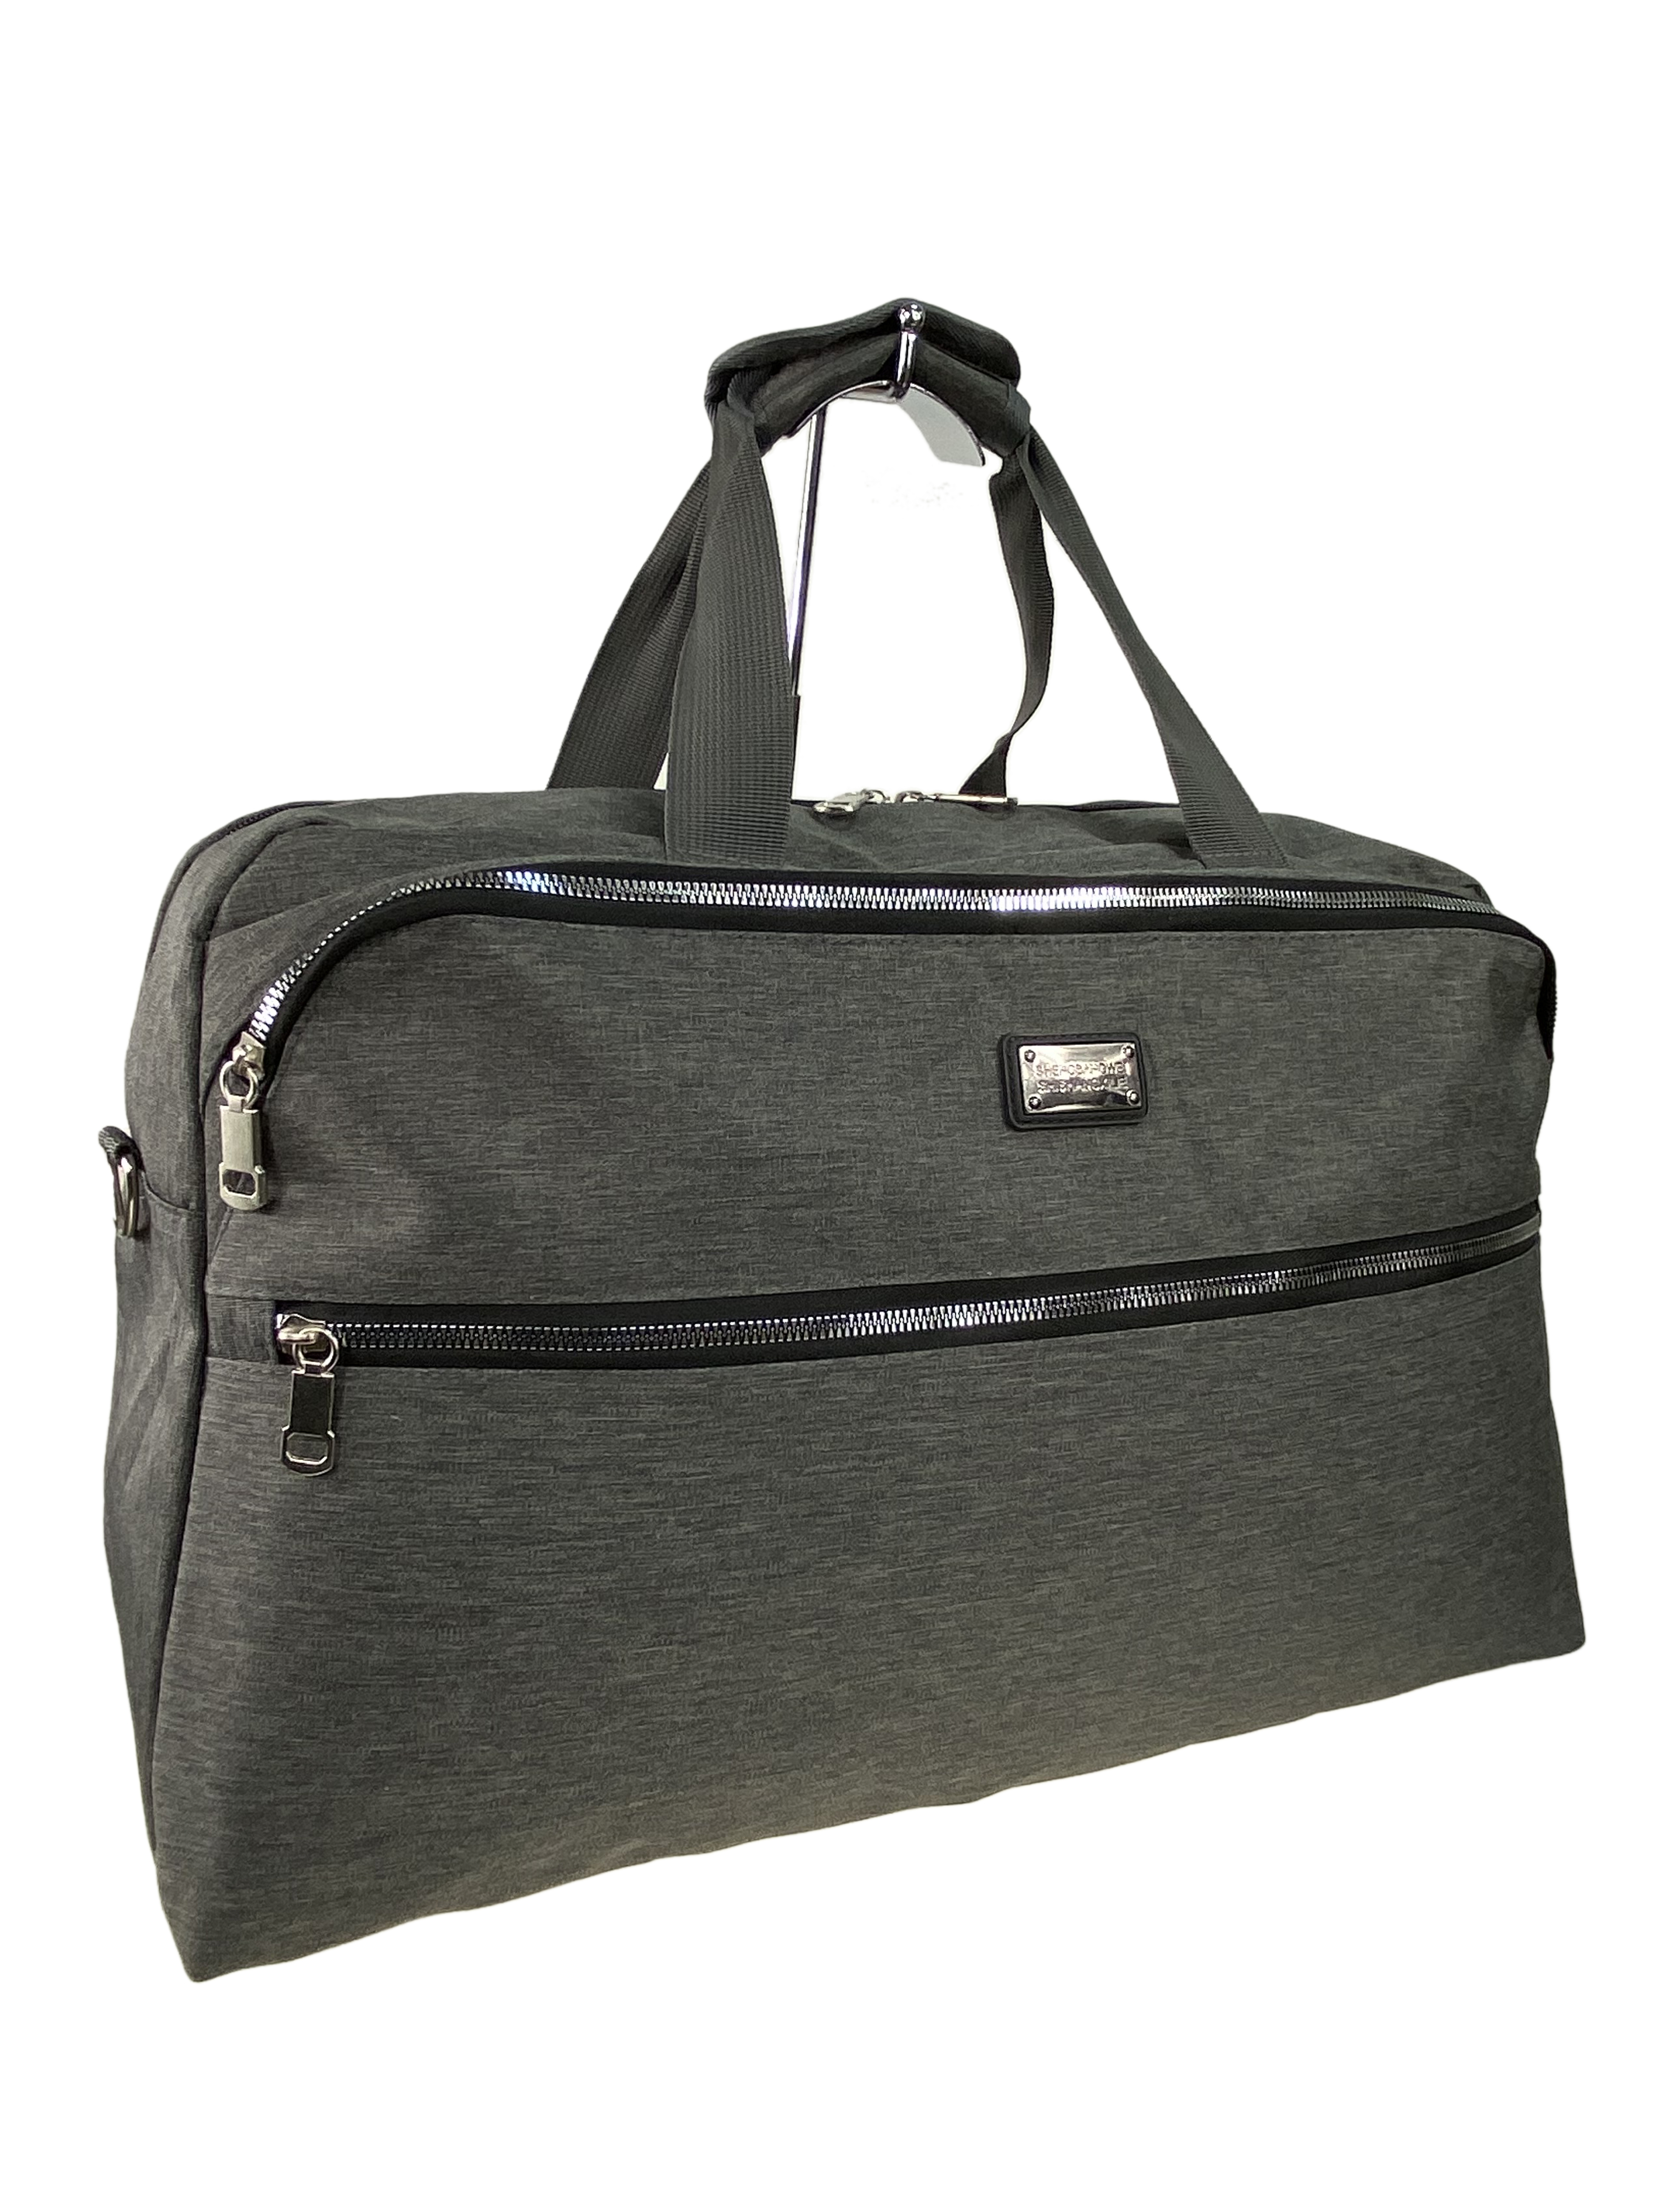 Текстильная дорожная сумка, цвет серый